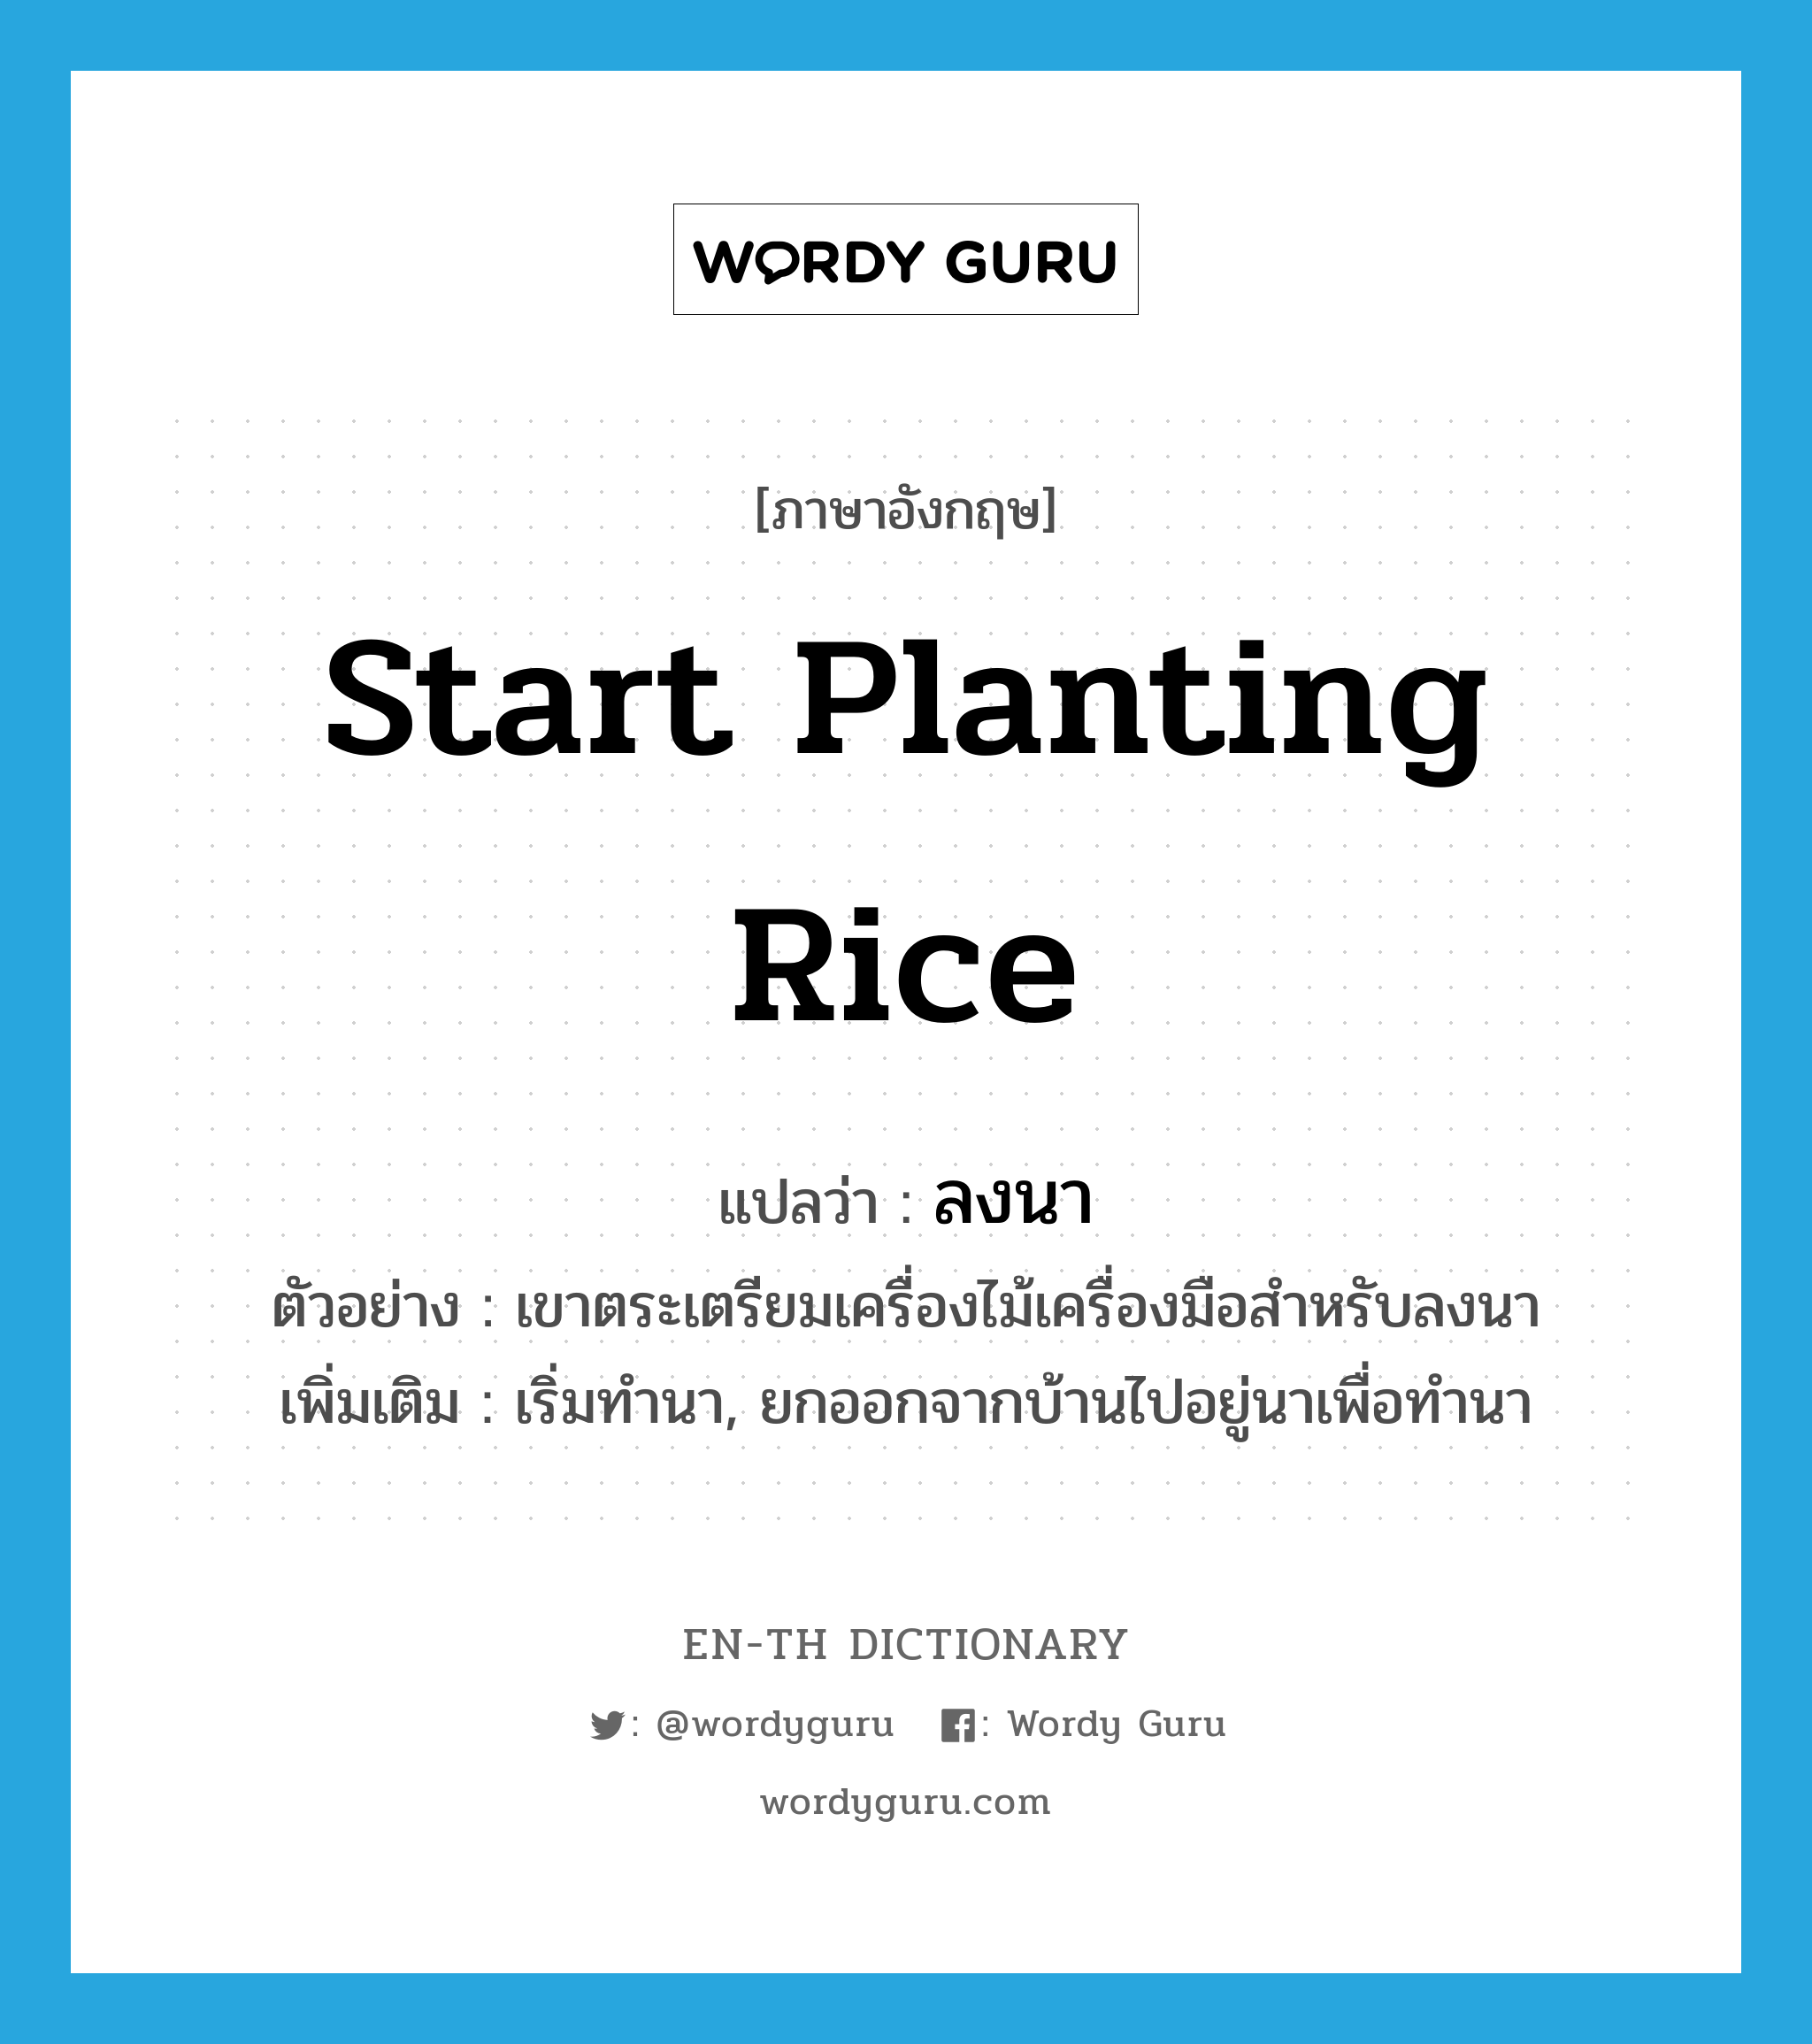 ลงนา ภาษาอังกฤษ?, คำศัพท์ภาษาอังกฤษ ลงนา แปลว่า start planting rice ประเภท V ตัวอย่าง เขาตระเตรียมเครื่องไม้เครื่องมือสำหรับลงนา เพิ่มเติม เริ่มทำนา, ยกออกจากบ้านไปอยู่นาเพื่อทำนา หมวด V